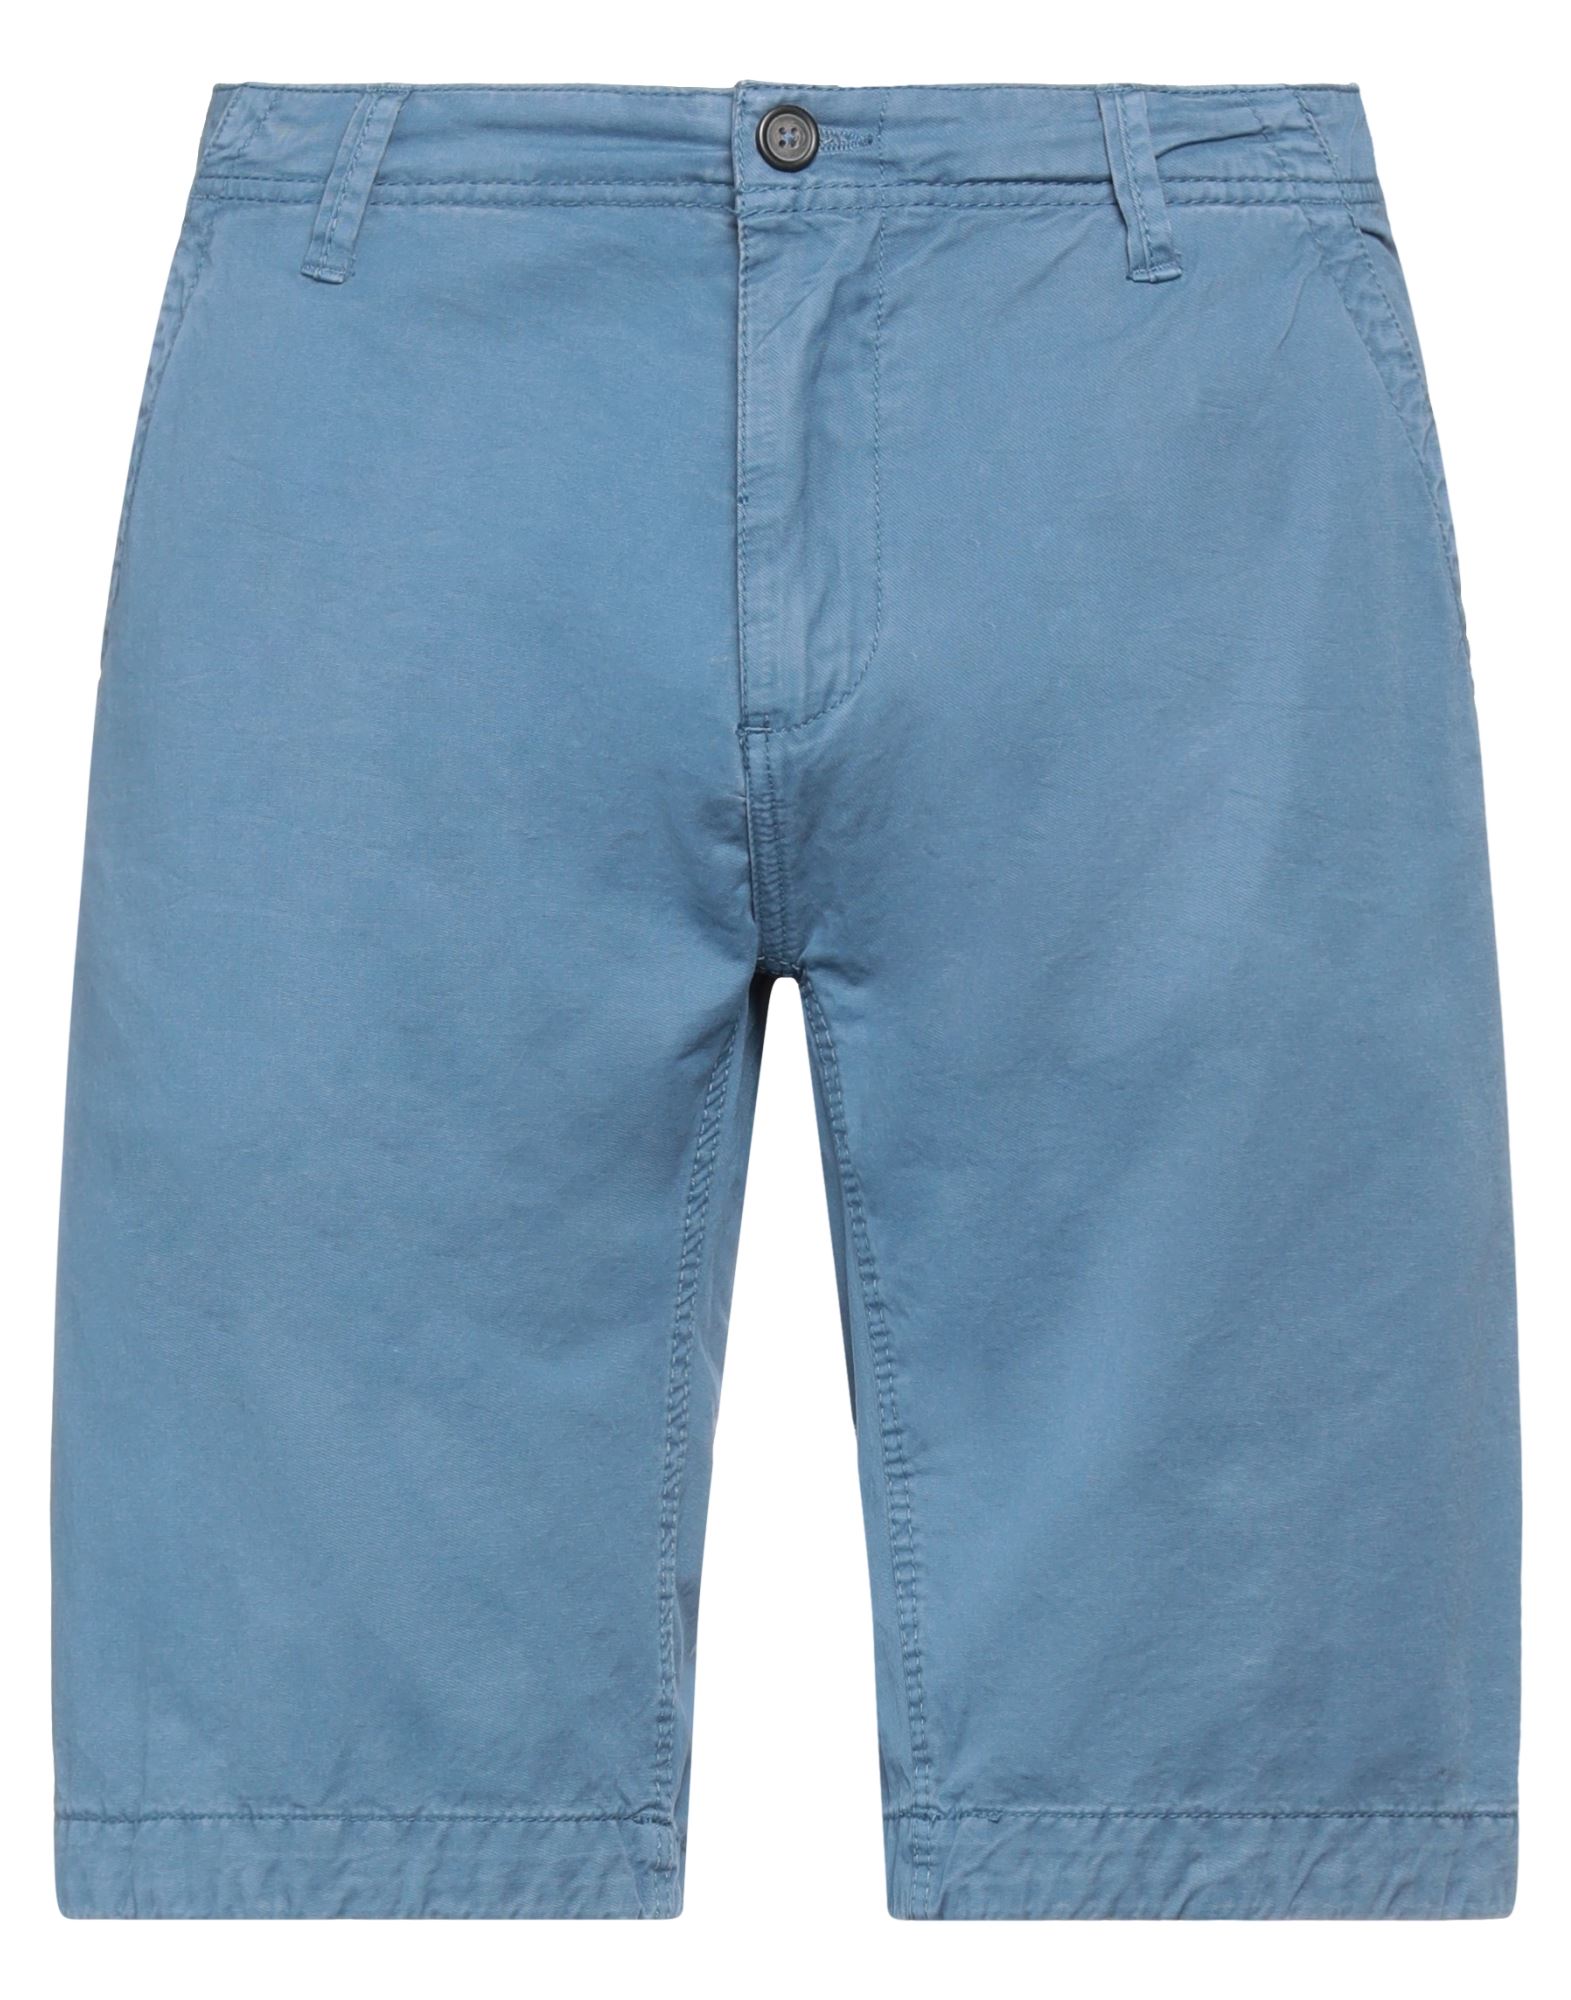 A.f.f Associazione Fabbri Fiorentini A. F.f Associazione Fabbri Fiorentini Man Shorts & Bermuda Shorts Slate Blue Size 36 Cotton